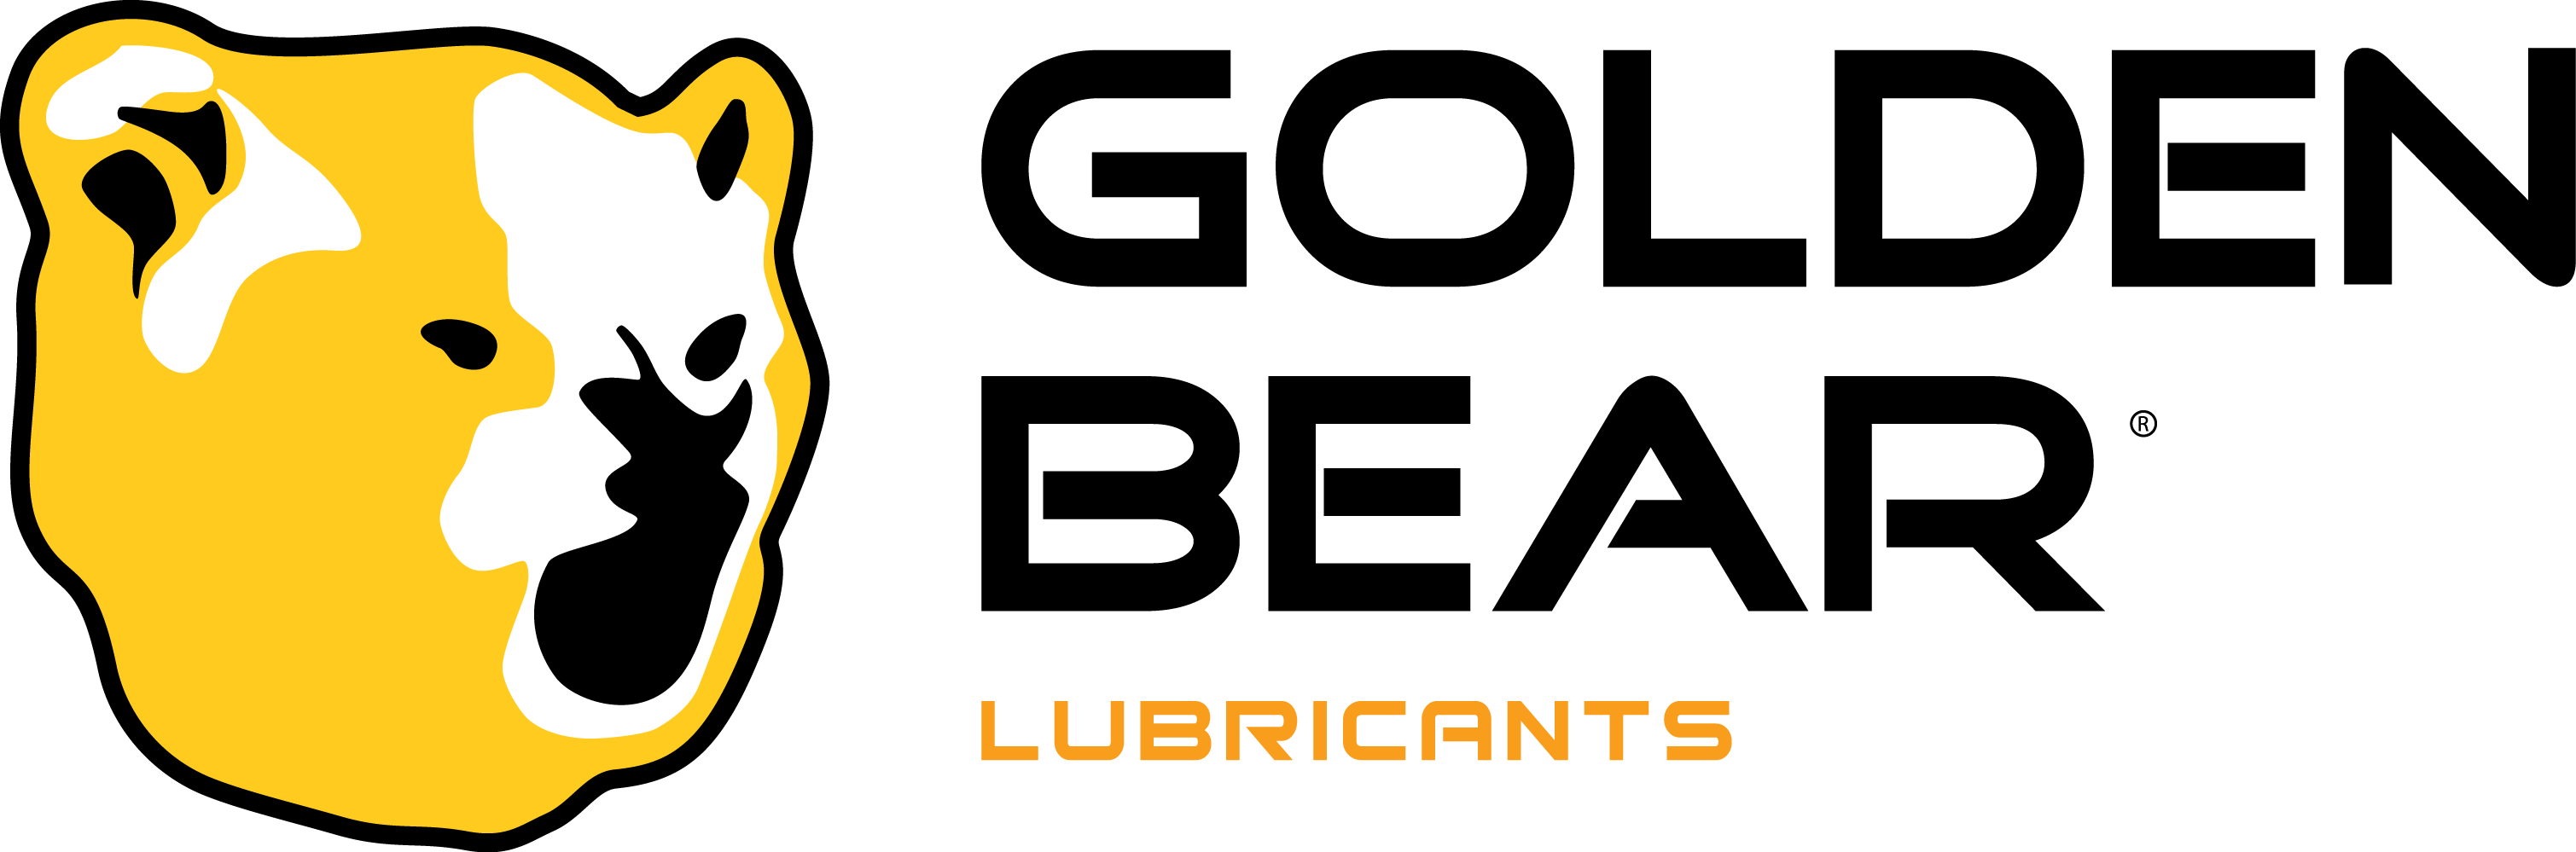 ucasagrande_goldenbearlubricants